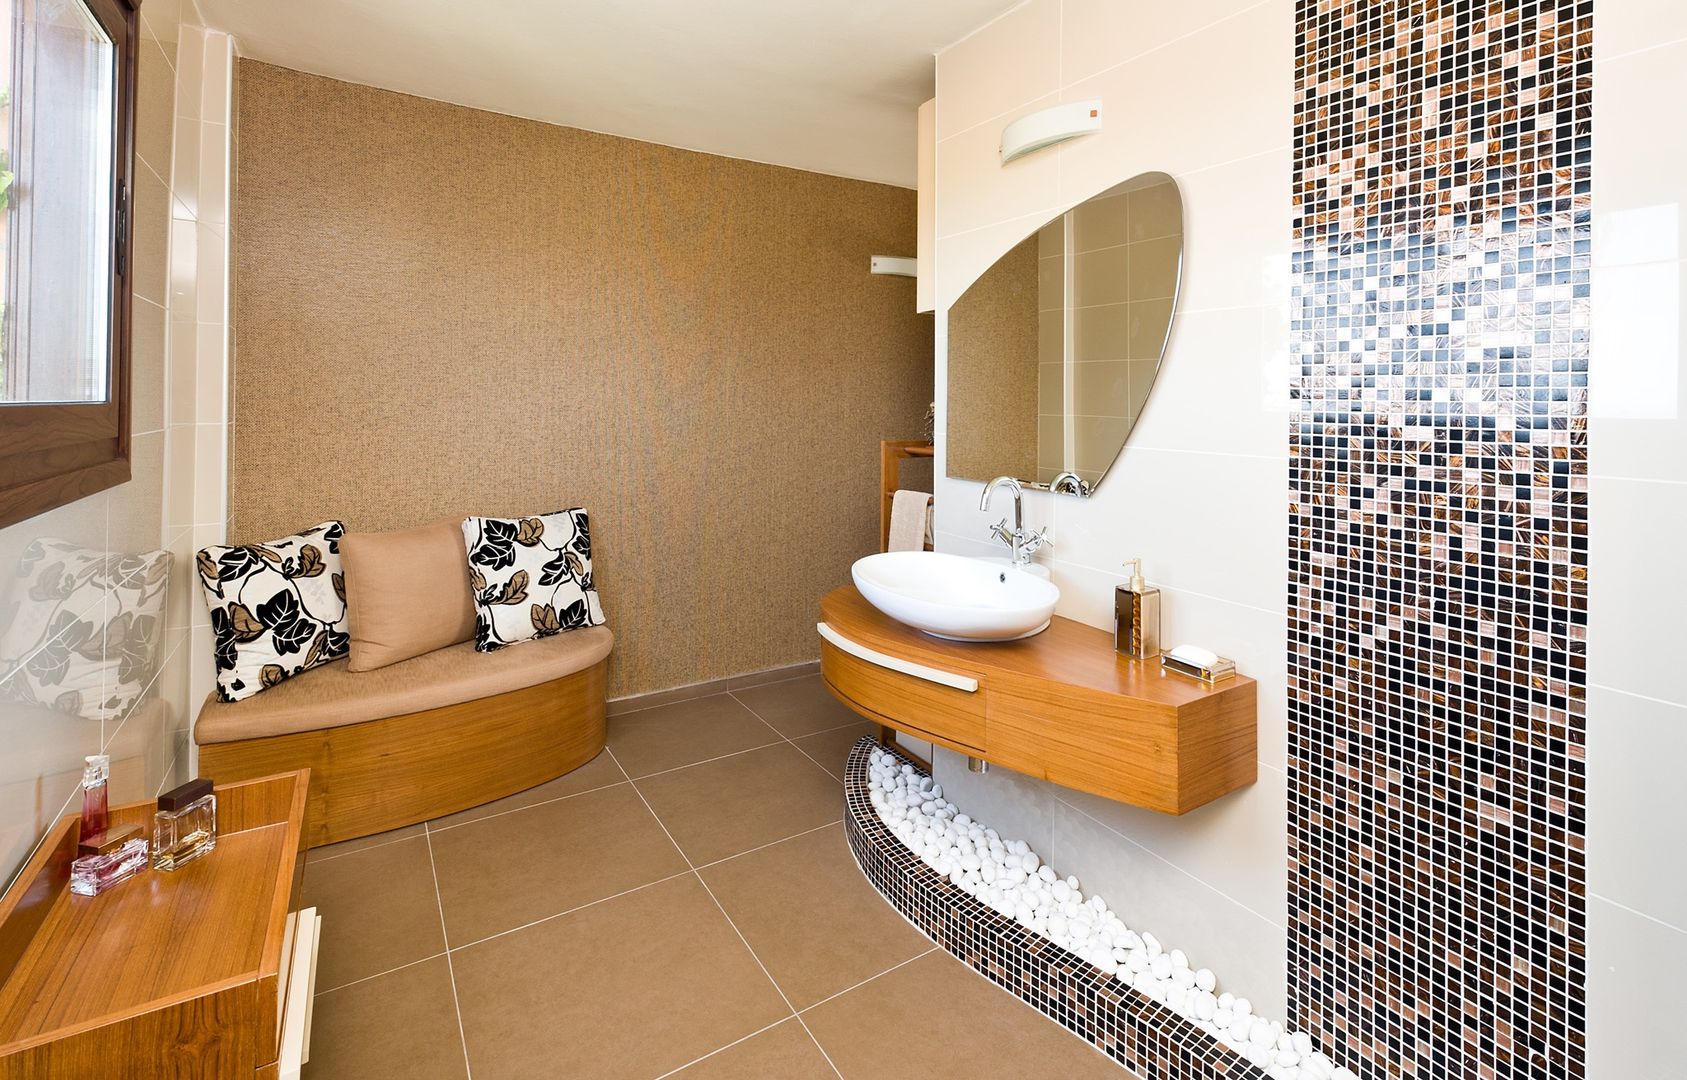 Bathroom / Girne / Cyprus, Şölen Üstüner İç mimarlık Şölen Üstüner İç mimarlık Baños modernos